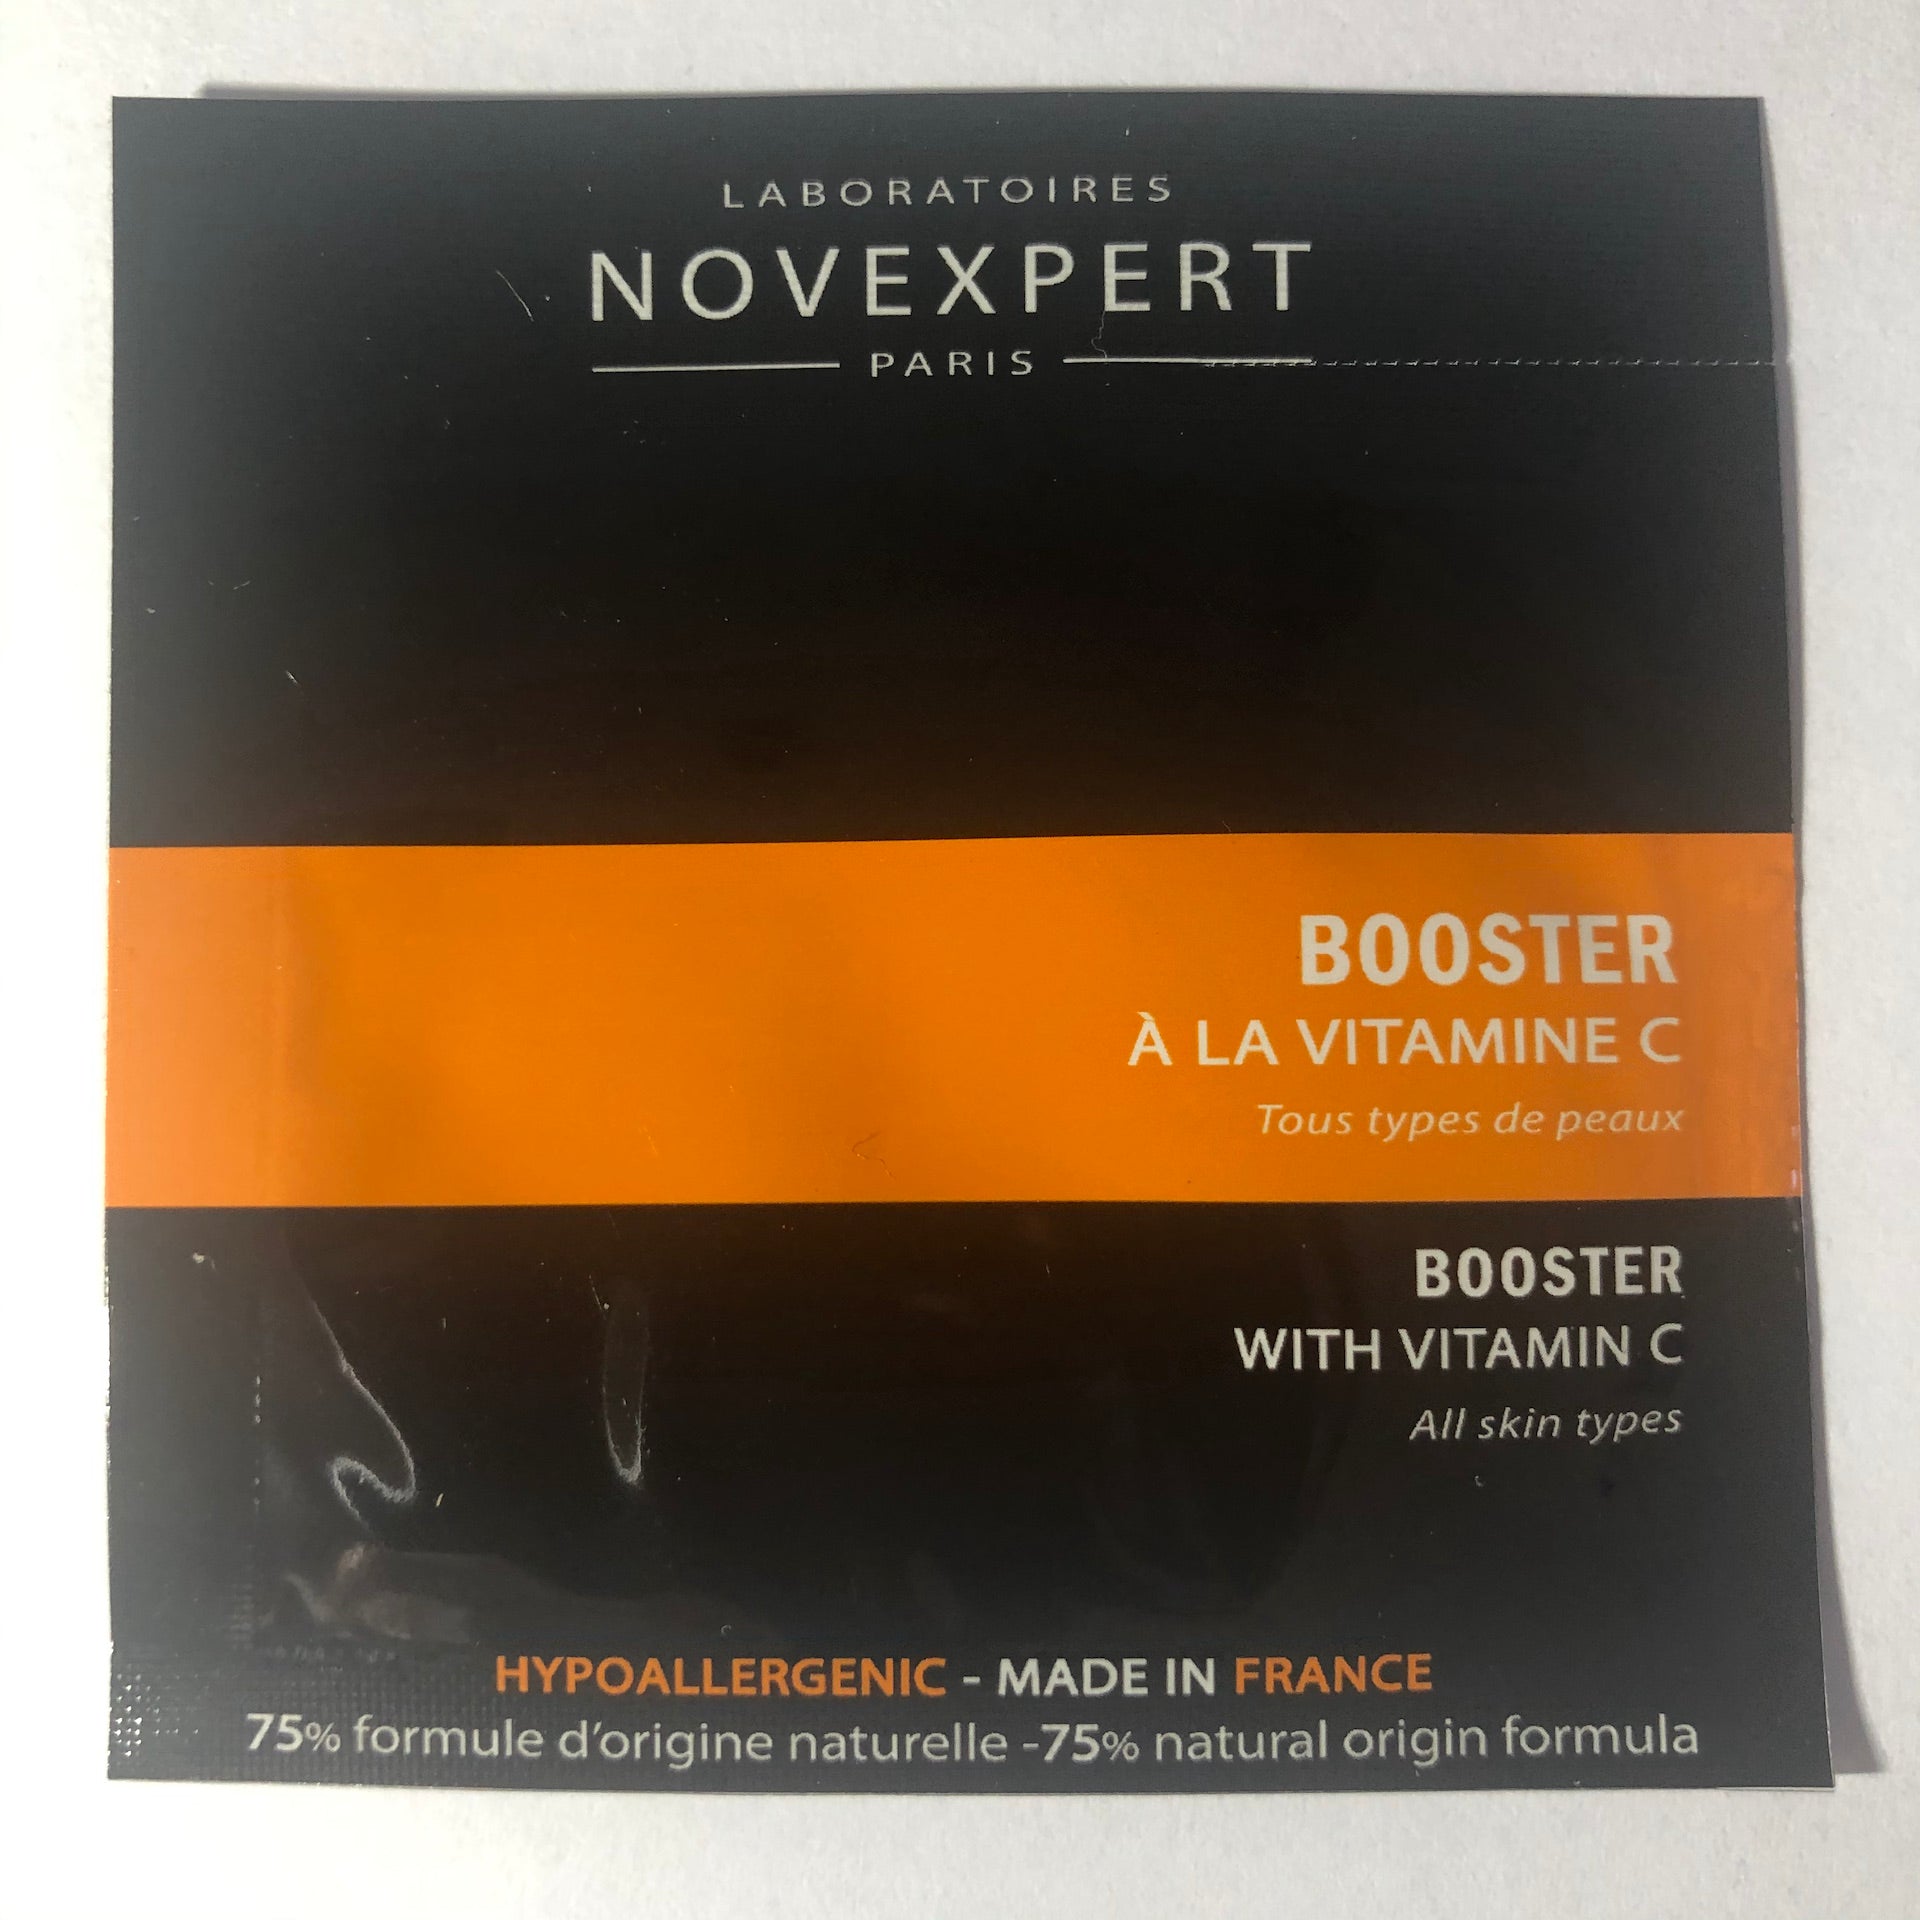 Vitamina C - Siero Booster alla Vitamina C Novexpert (sample)